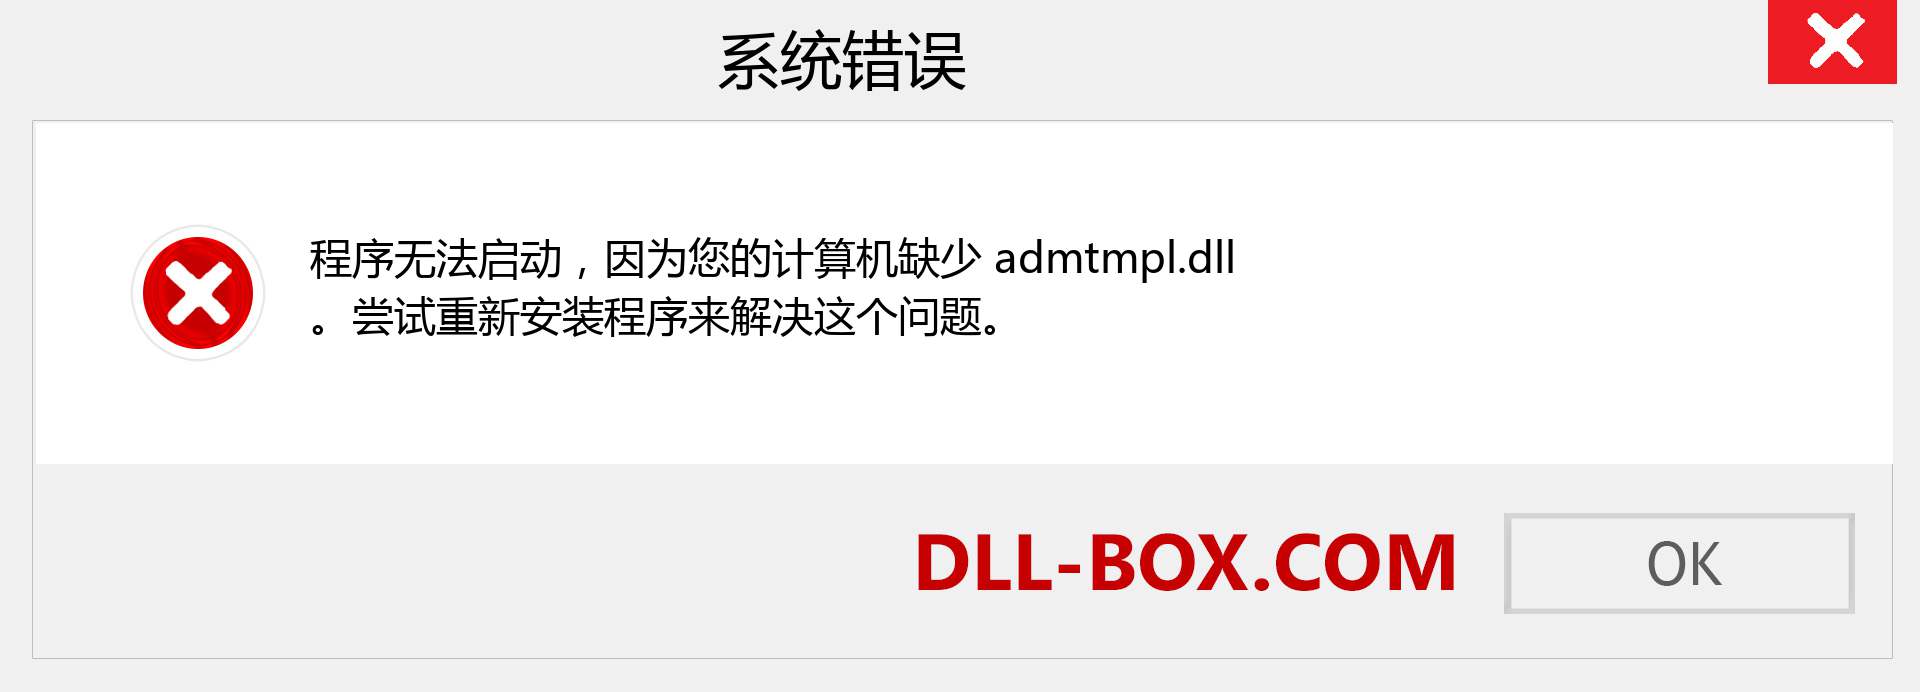 admtmpl.dll 文件丢失？。 适用于 Windows 7、8、10 的下载 - 修复 Windows、照片、图像上的 admtmpl dll 丢失错误